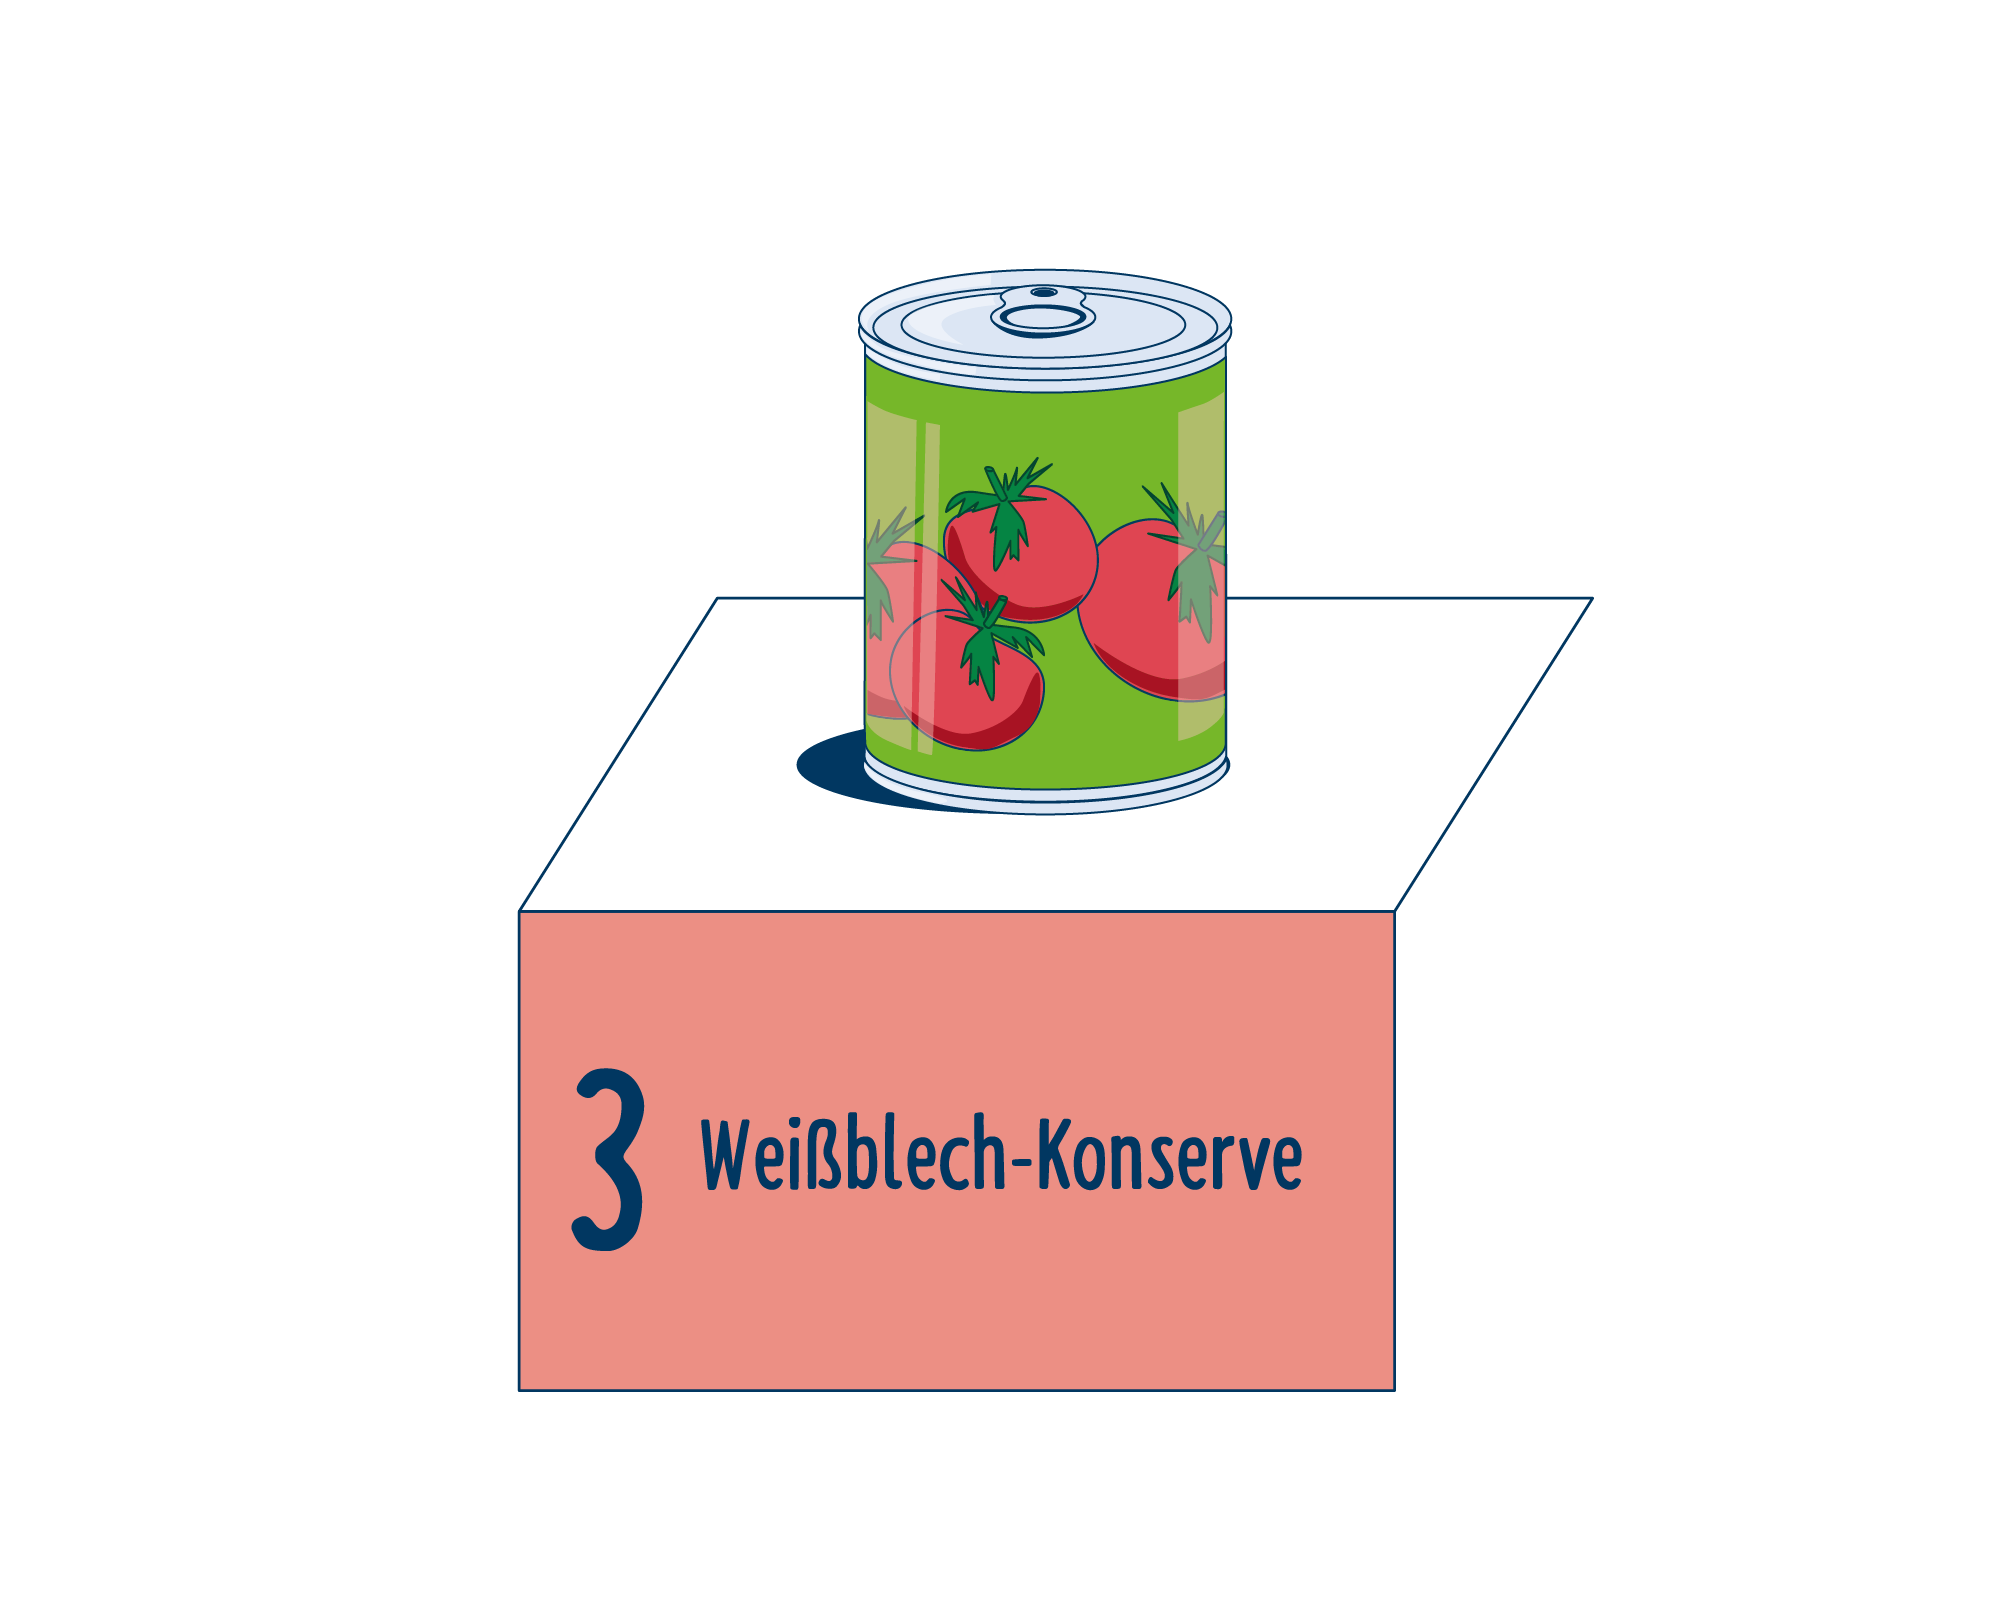 Bild Produktverpackung von Verarbeitete Tomaten eingeordnet auf Platz 3, bestehend aus Weißblech-Konserve.